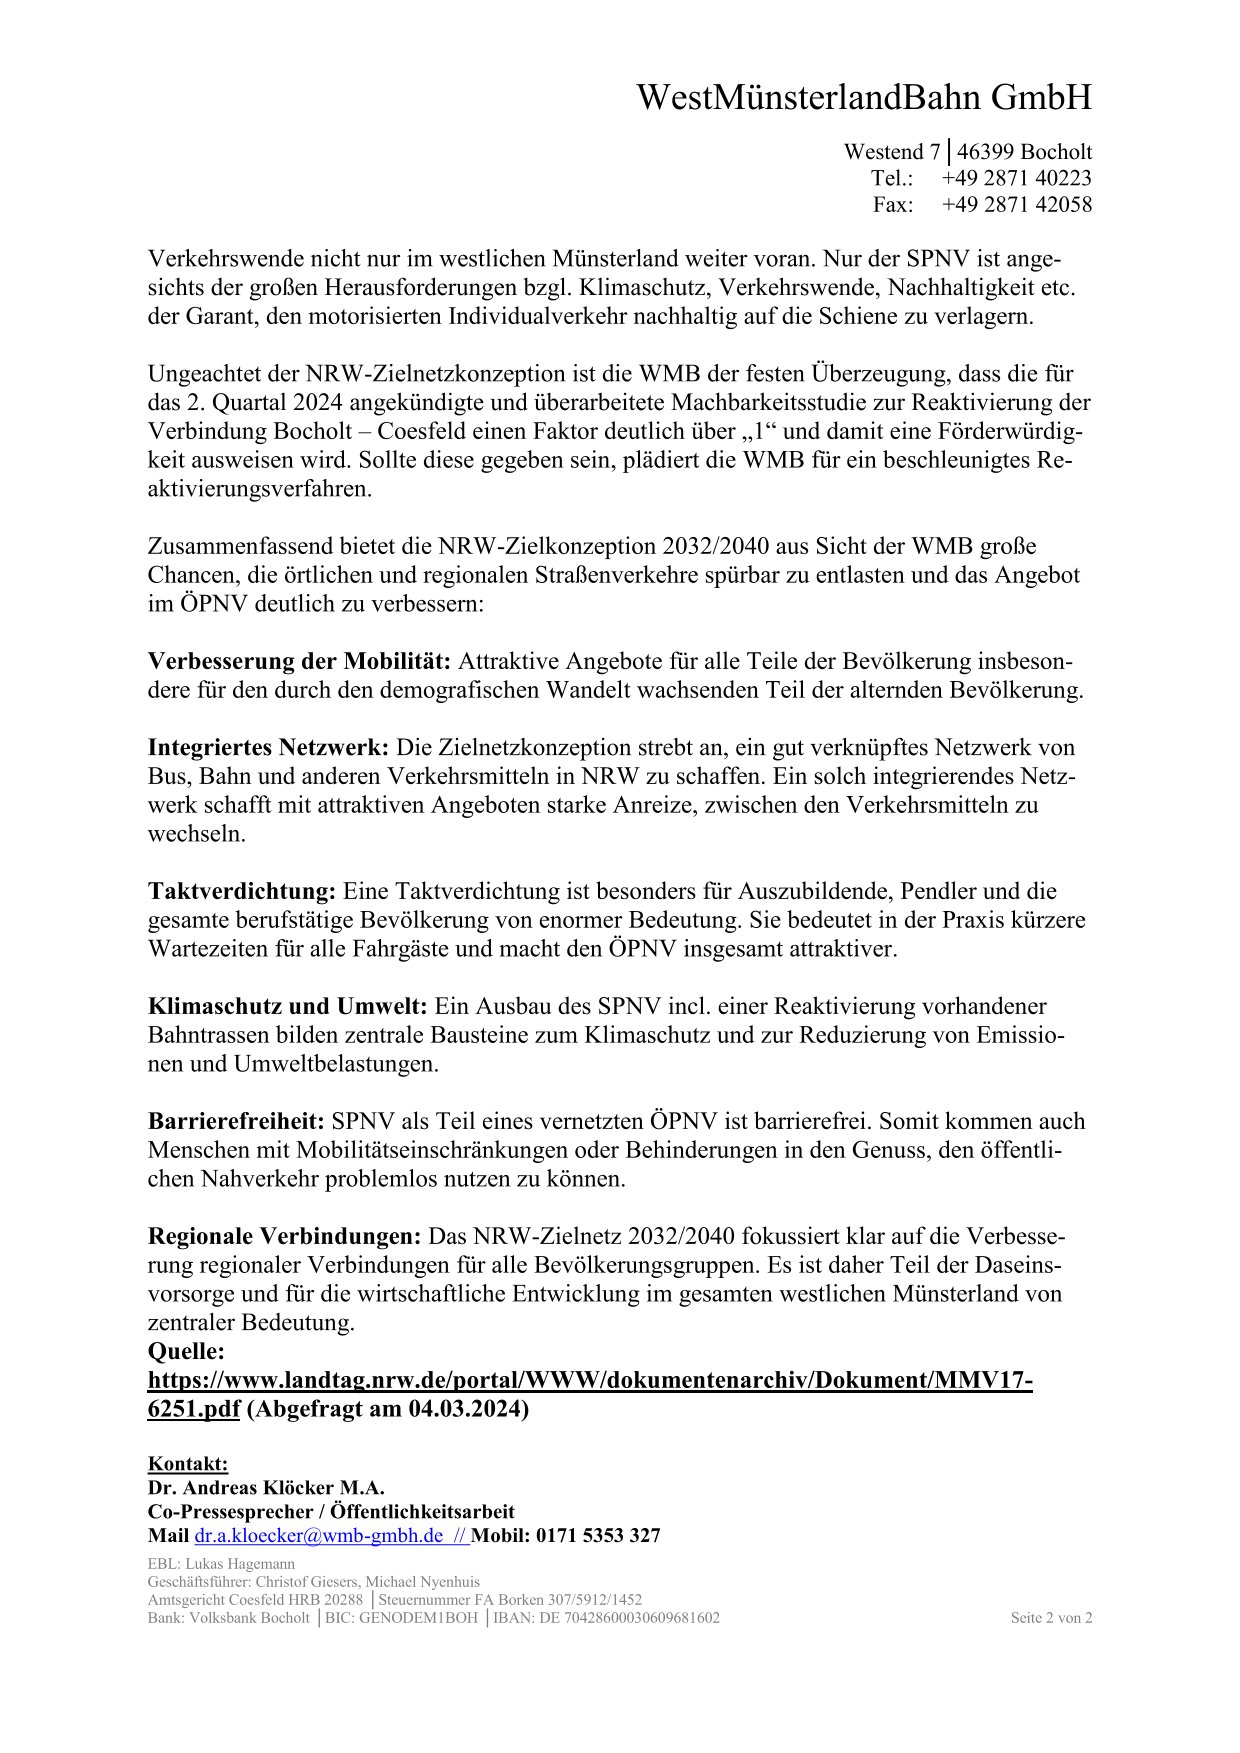 WMB-Pressmitteilung "NRW-Zielnetzkonzeption 2032/2040" Seite 2 v 2